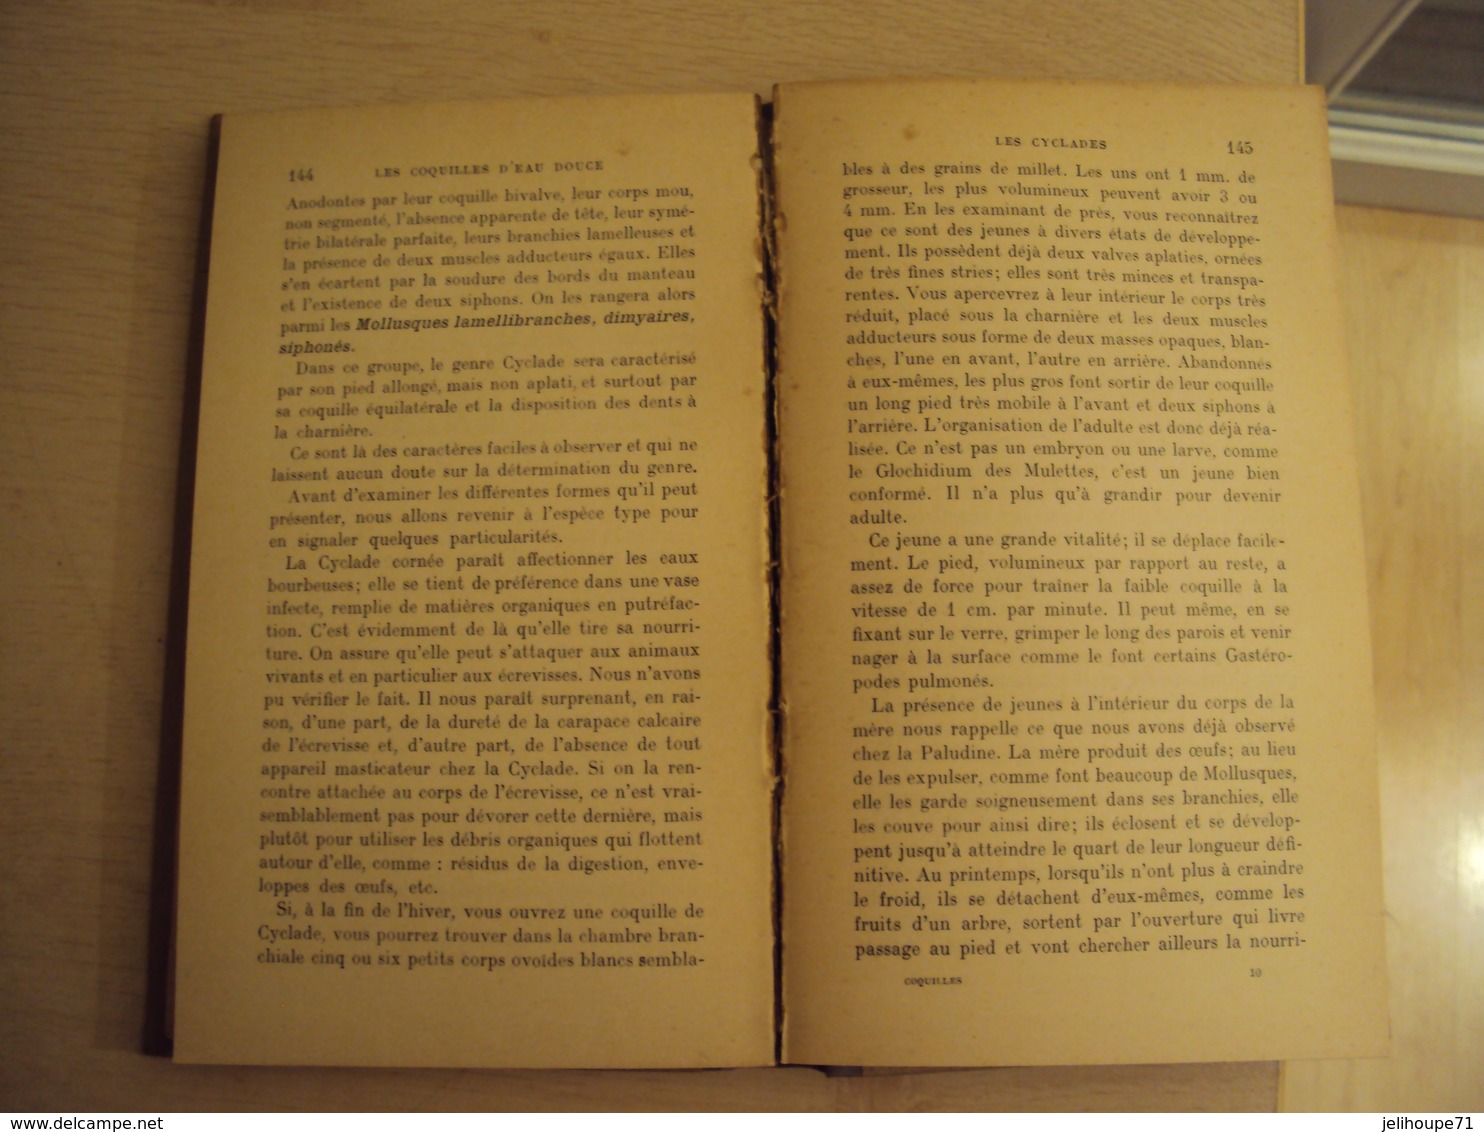 Encyclopédie pratique du naturiste - les mollusques d'eau douce  - tome XXIV -1926